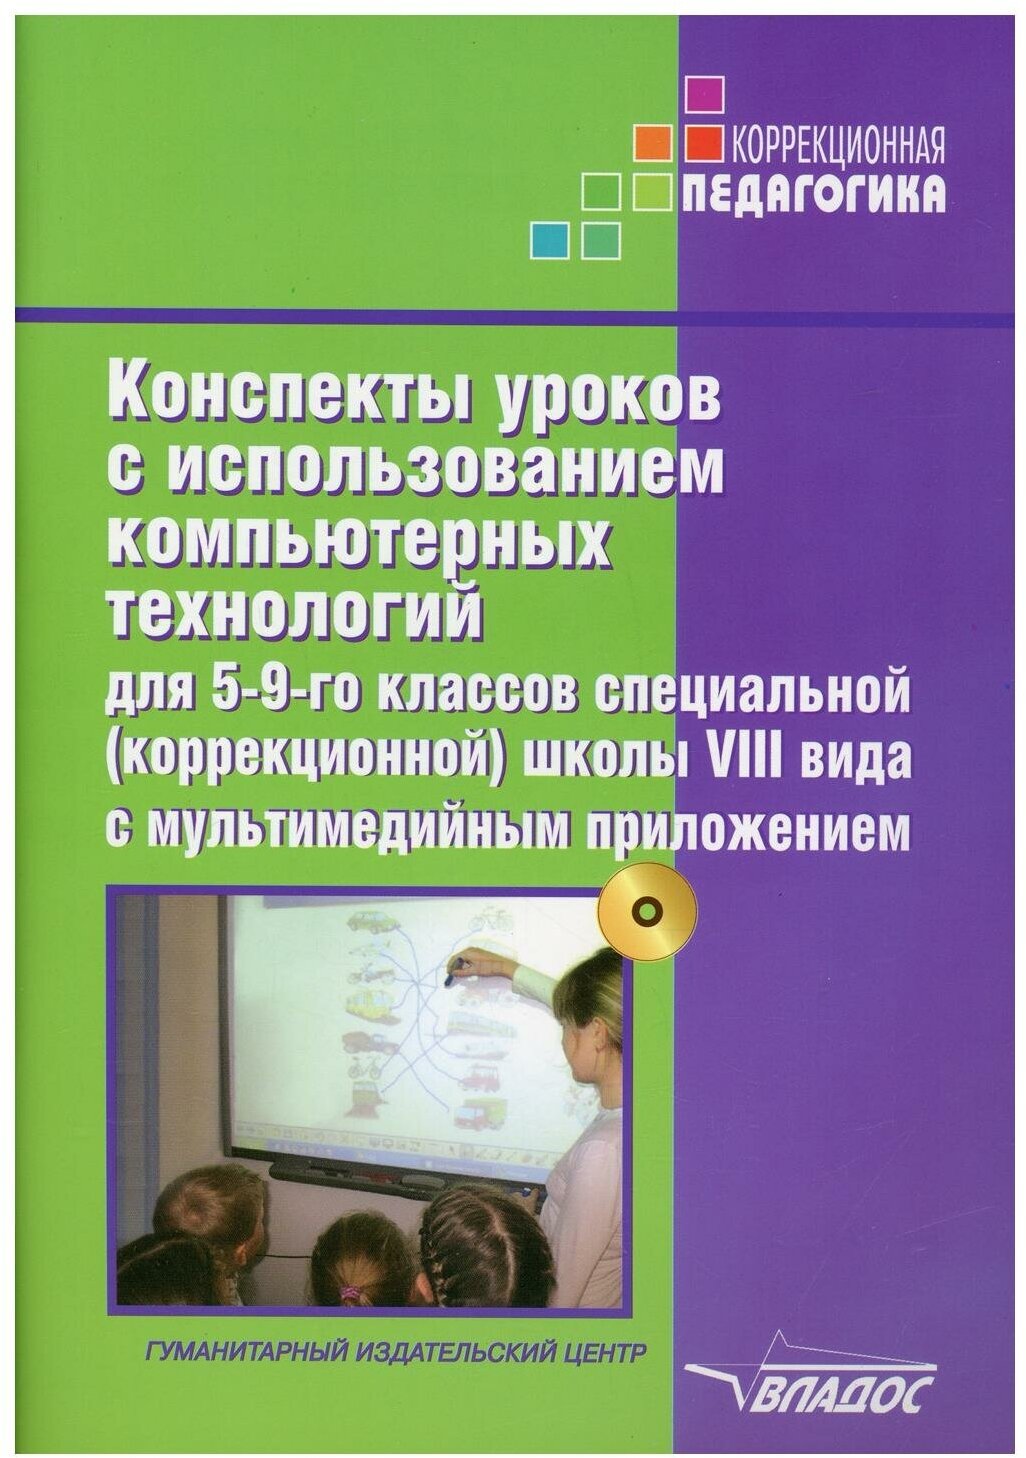 Конспекты уроков с использованием компьютерных технологий для 5-9 классов специальных школ VIII вида - фото №1